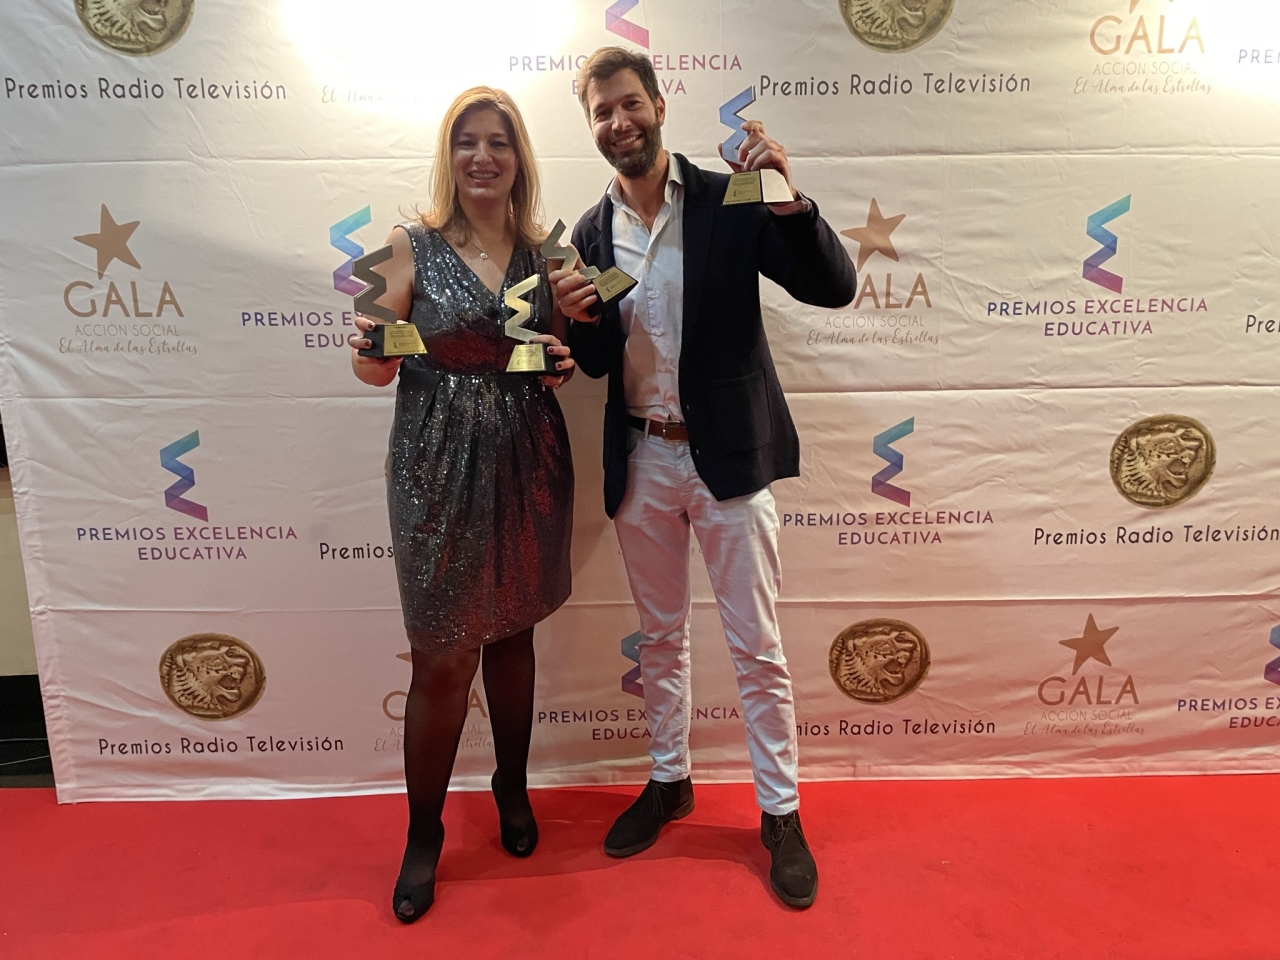 La VII edición de los Premios Excelencia Educativa premian la labor de Alterschool.travel y a su fundadora Patricia González